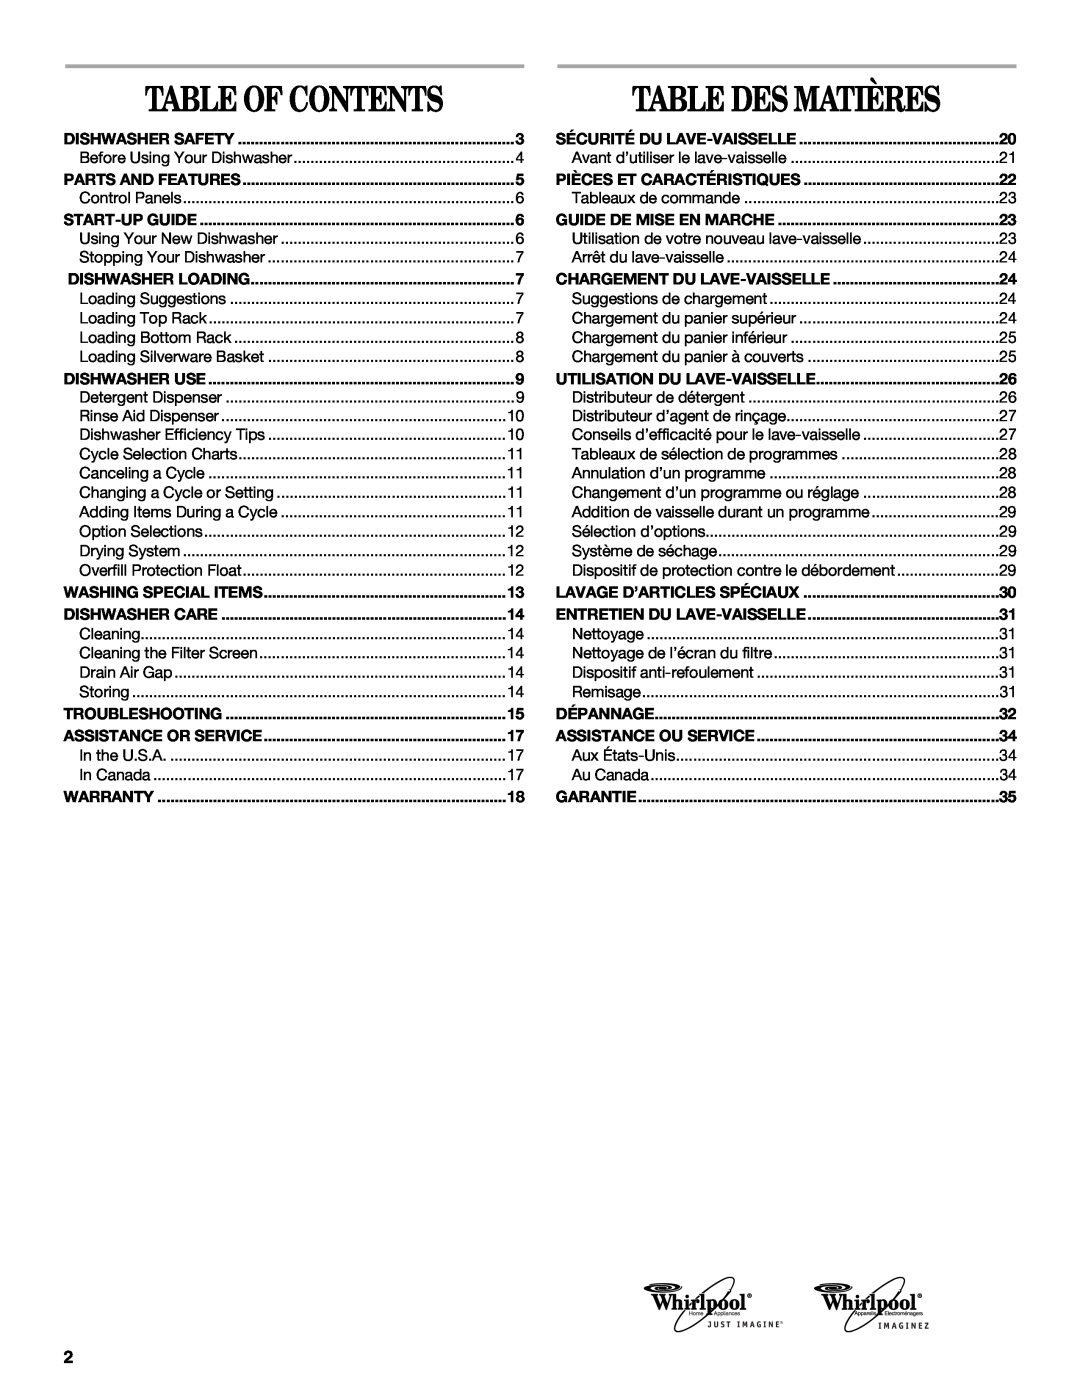 Whirlpool DU810, DU850, DU811 manual Table Des Matières, Table Of Contents 